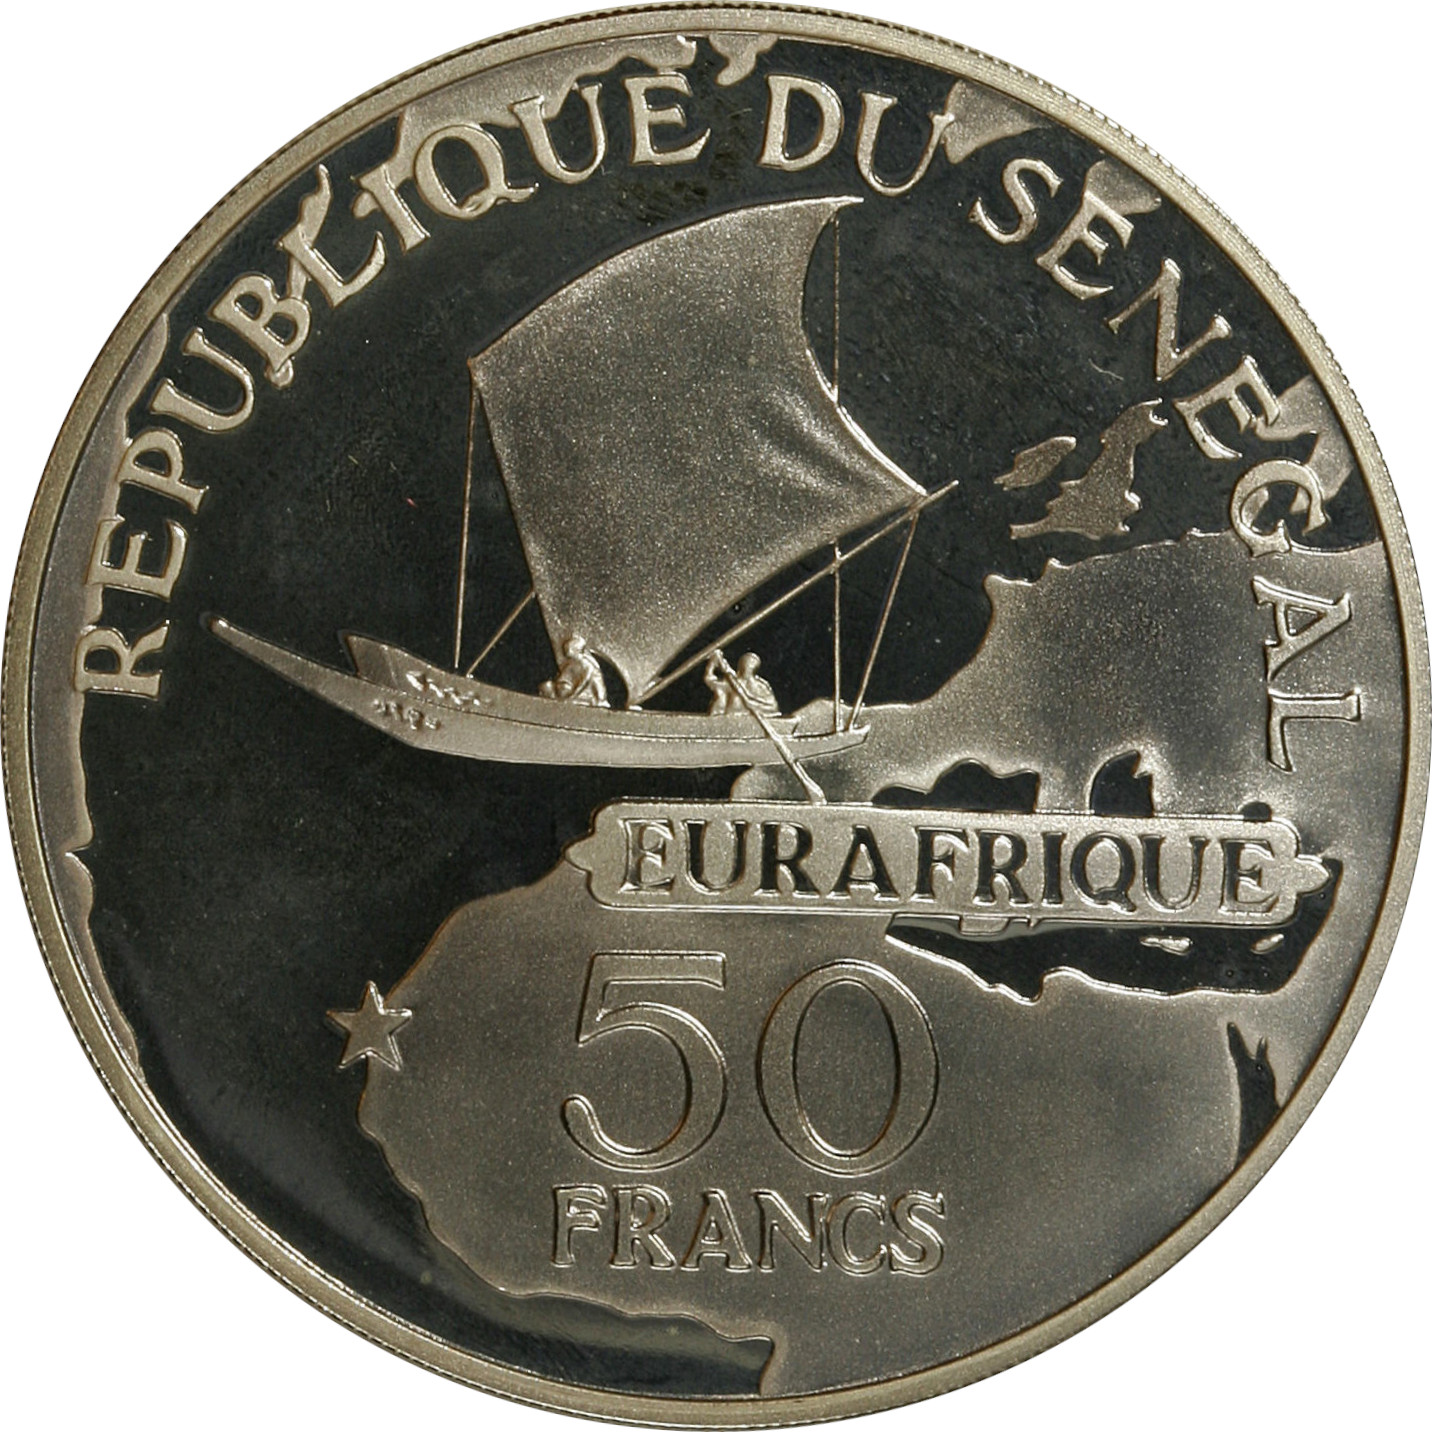 50 francs - Eurafrique - 25 ans